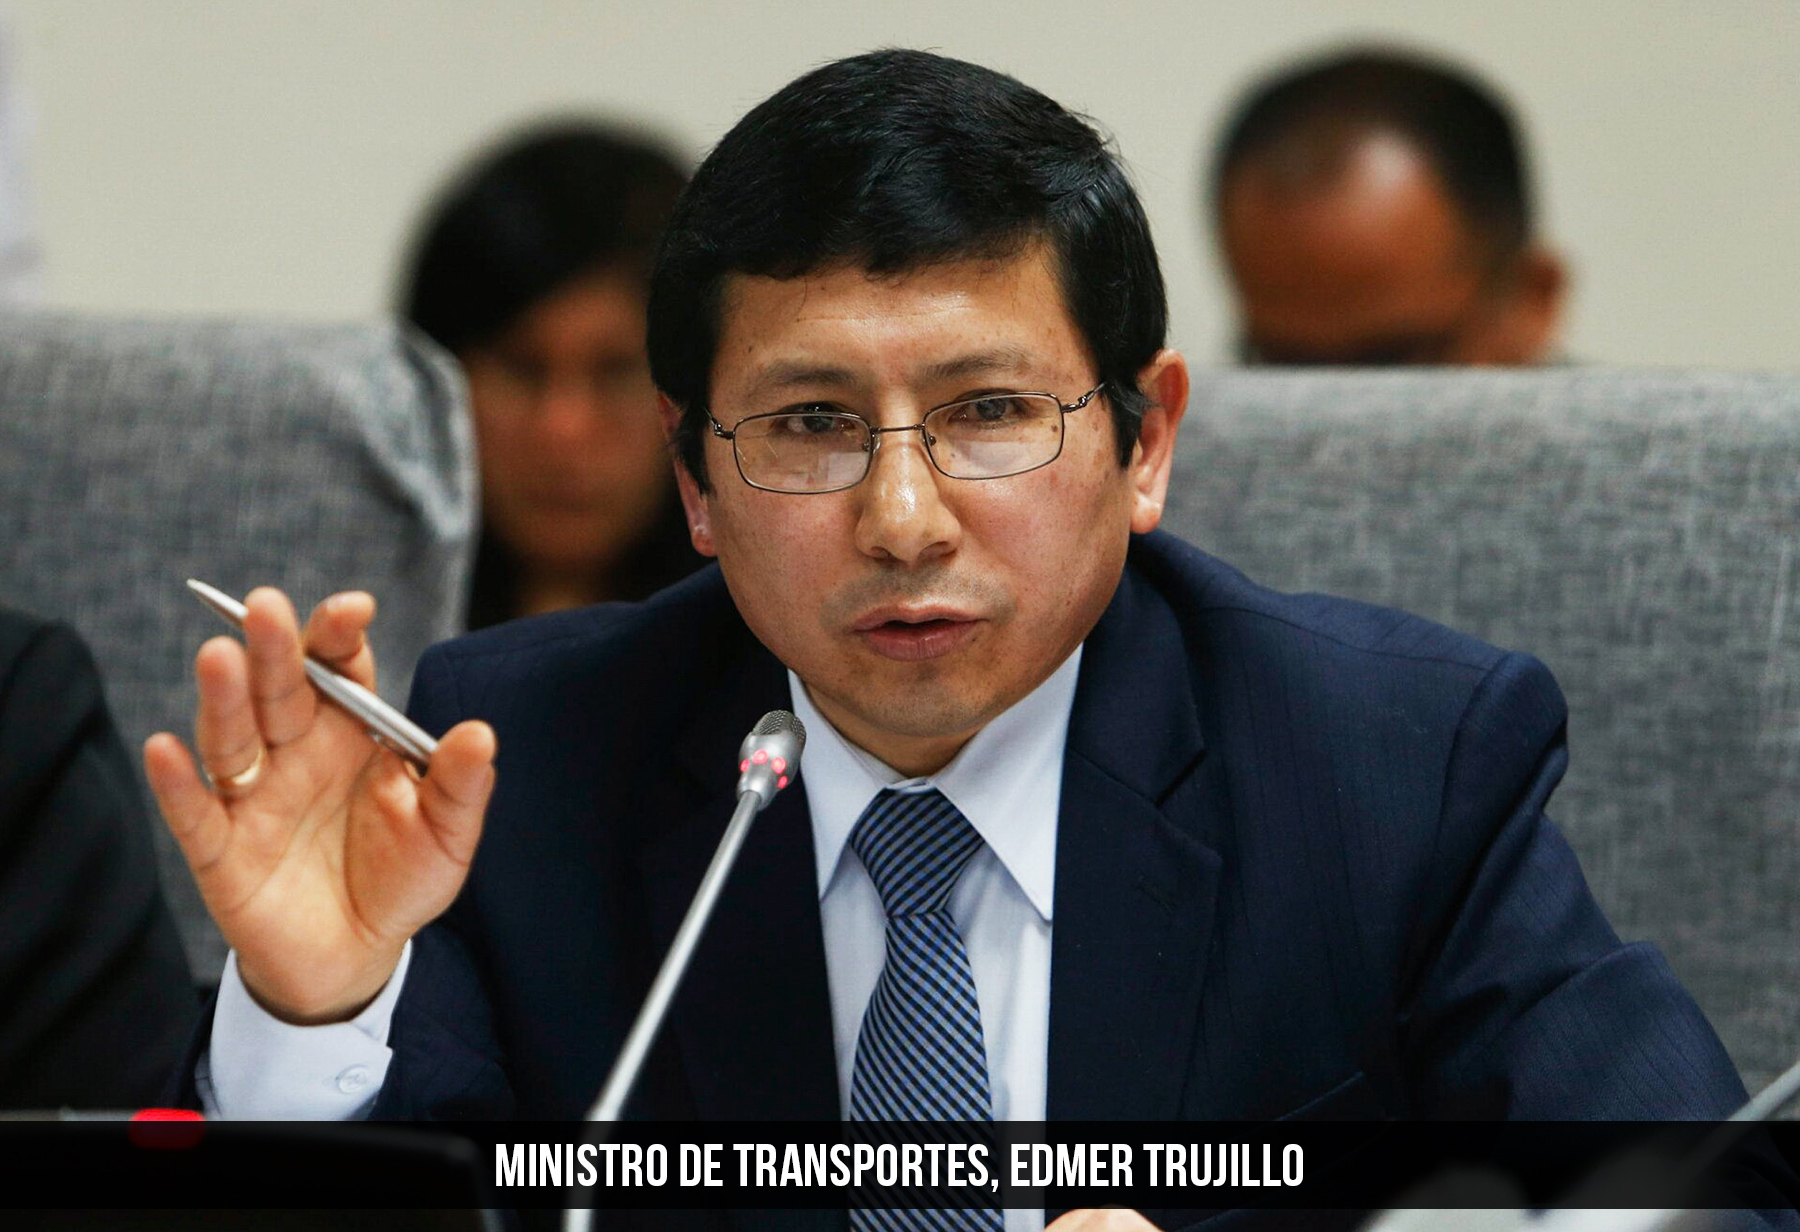 Ministro de Transportes - Edmer Trujillo